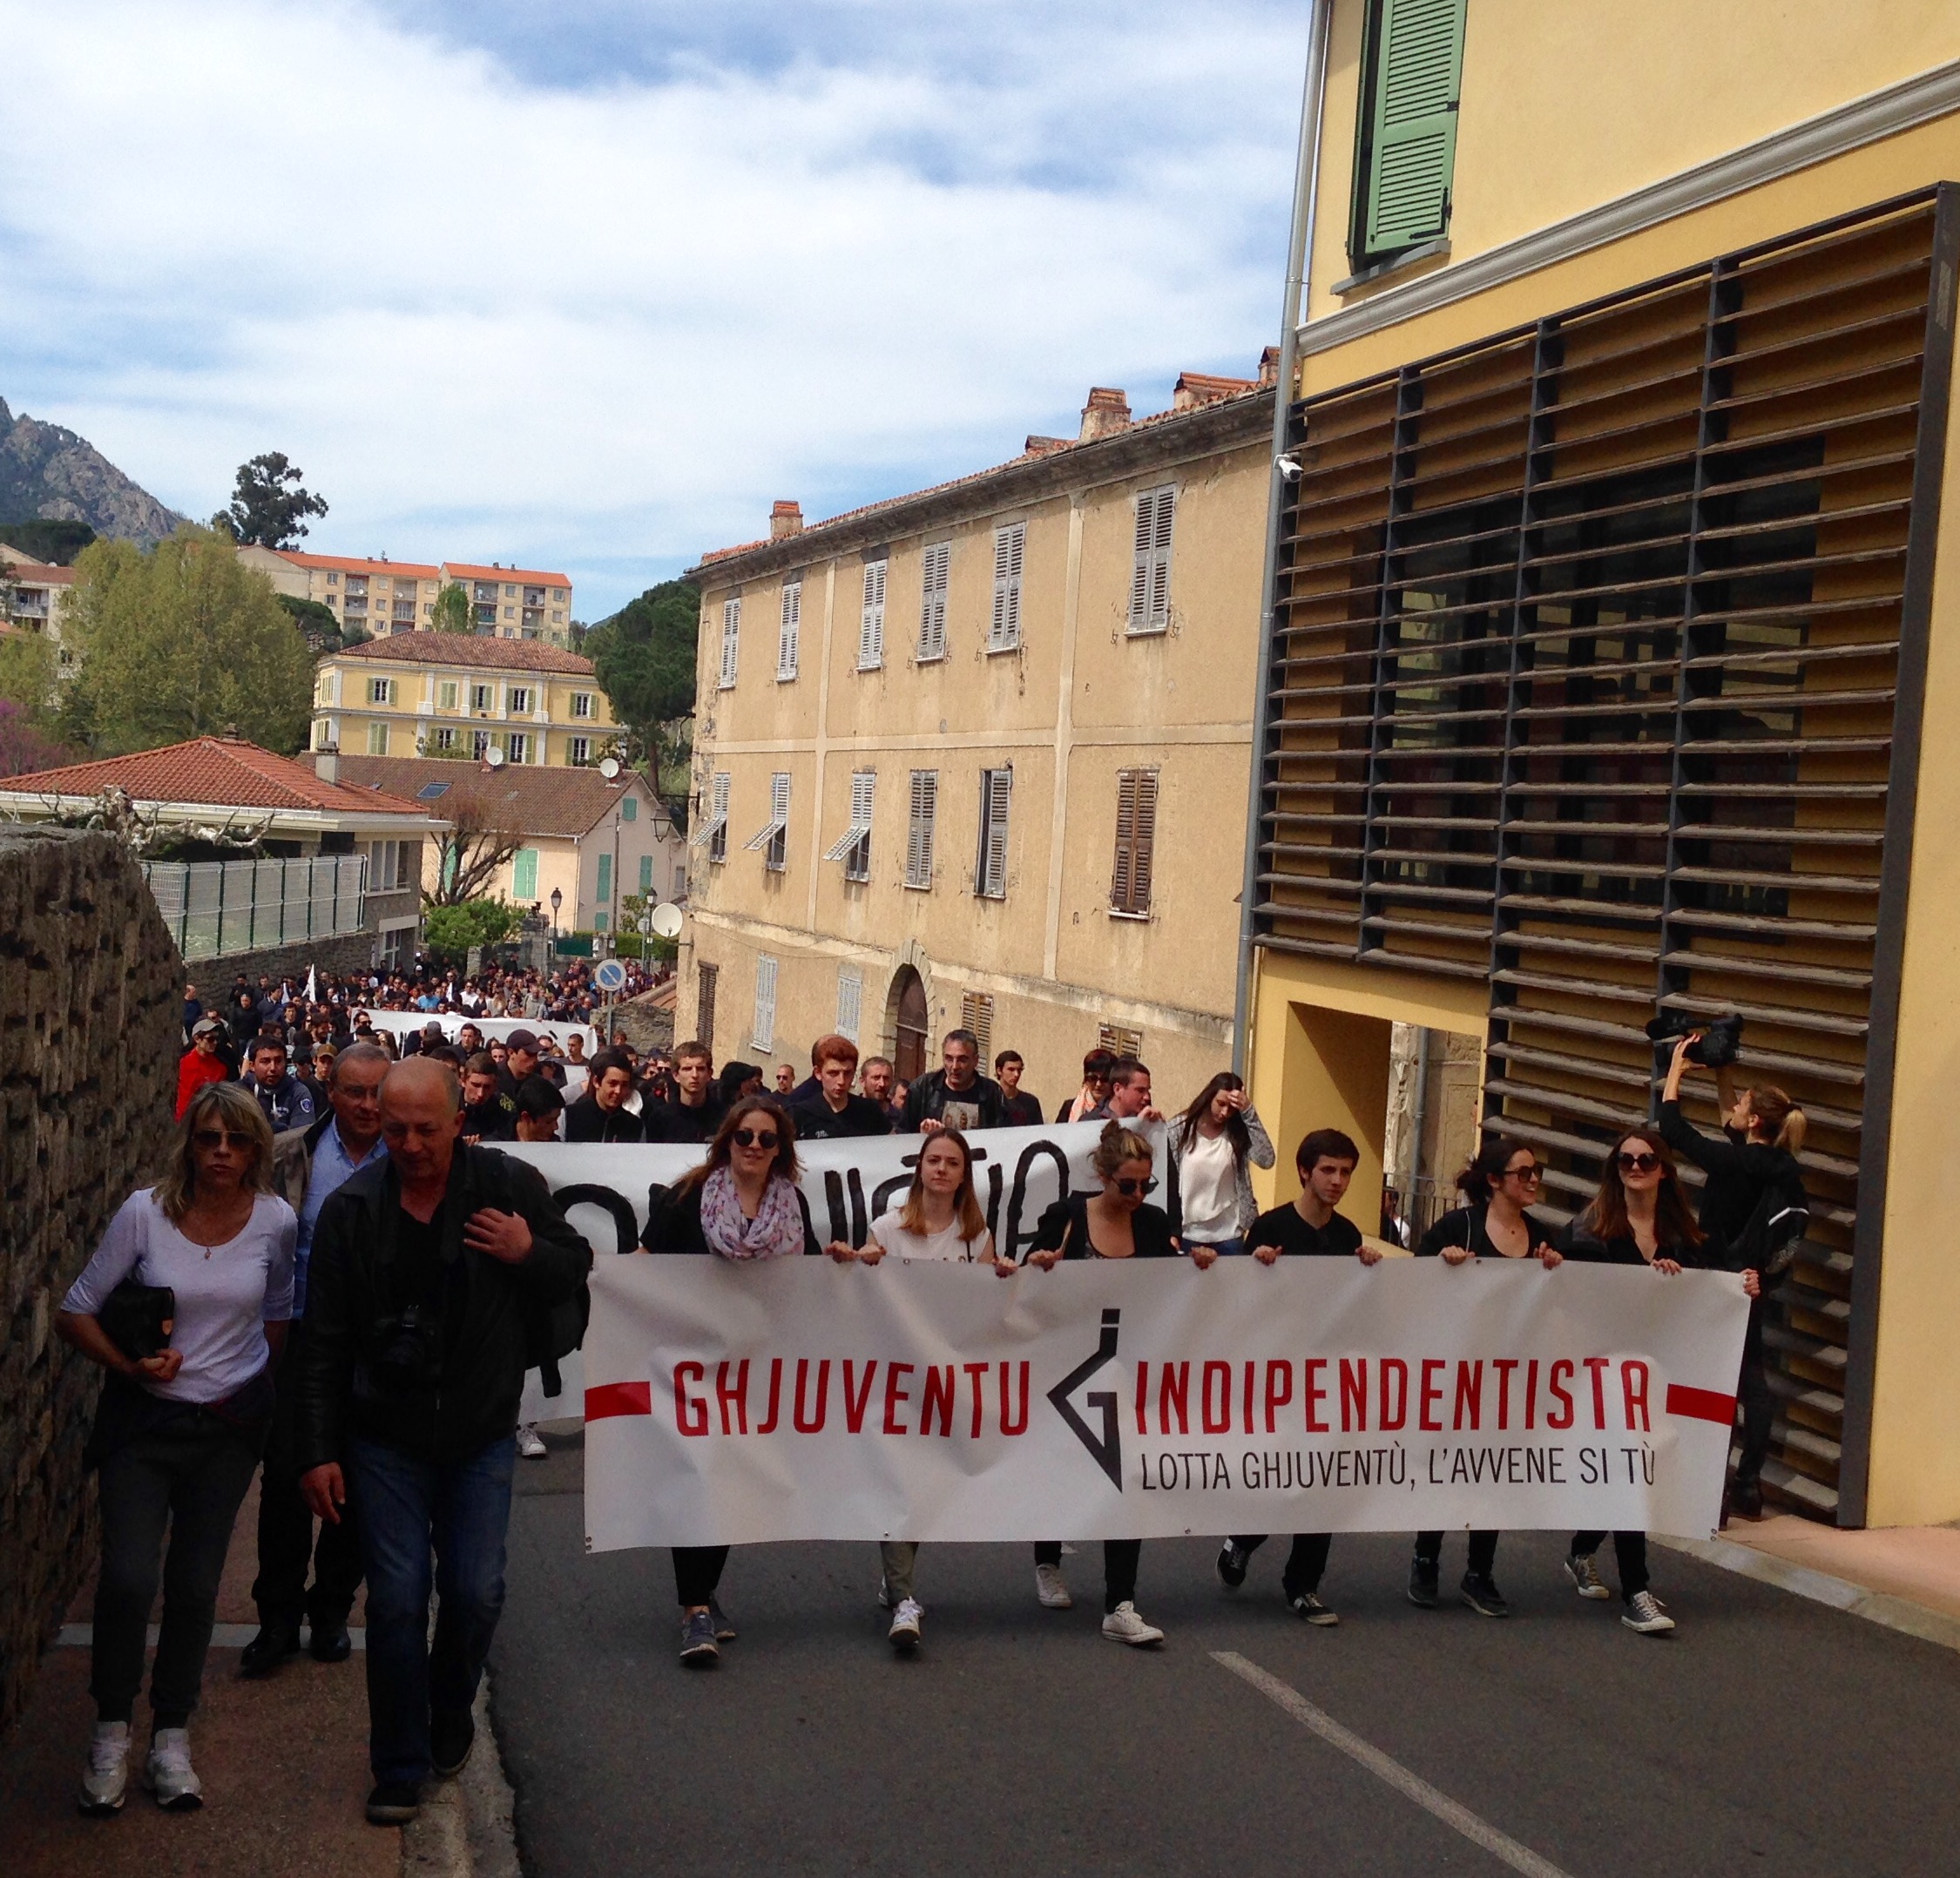 Corte : La manifestation de la Ghjuventù Indipendentista s'achève à la… Citadelle !